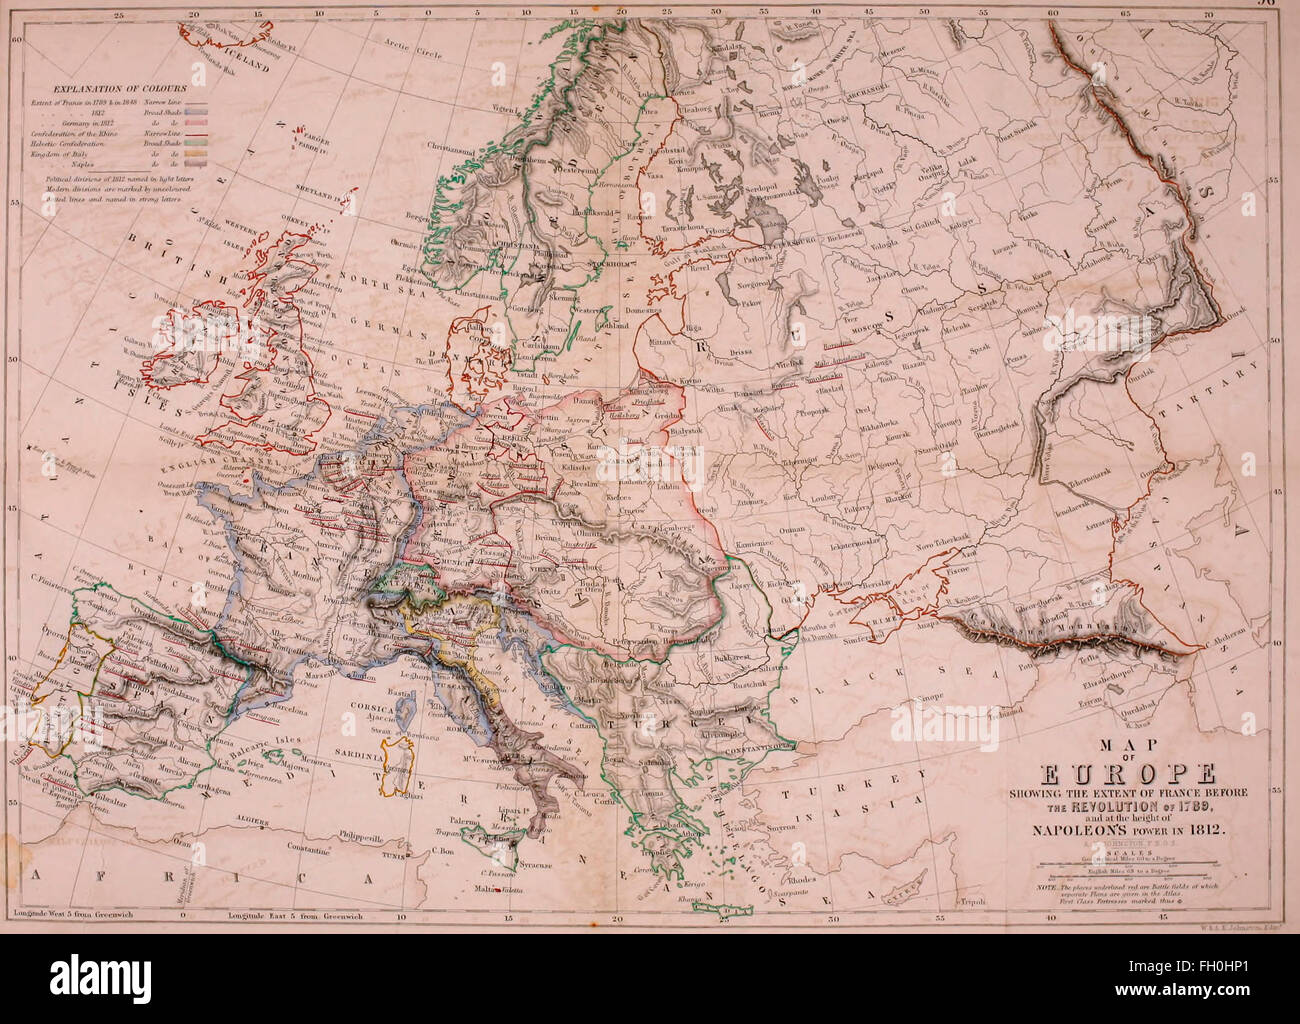 Karte von Europa zeigt das Ausmaß der Frankreich vor der Revolution von 1789 und auf dem Höhepunkt der macht Napoleons 1812 Stockfoto